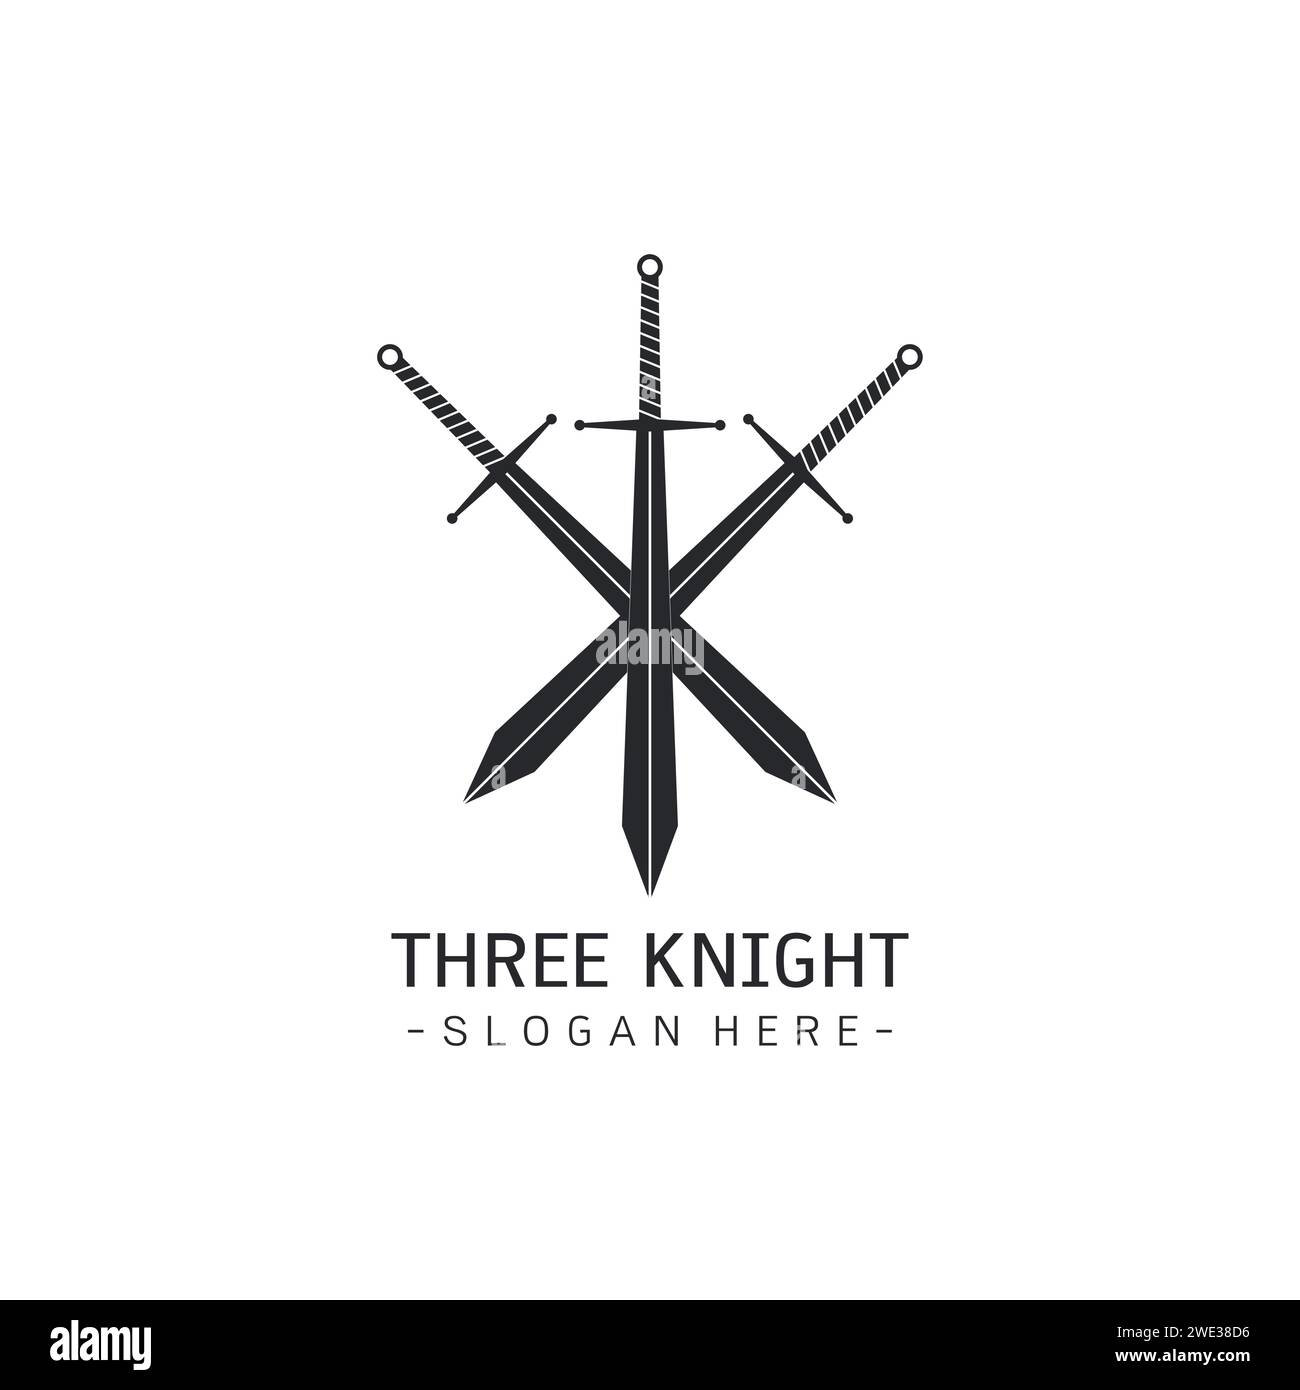 Stilisiertes Bild von drei Schwertern Logo Vorlage, gekreuzte Schwerter Silhouette Tattoo, drei Musketiere Konzept mittelalterliche Waffen auf weißem Hintergrund Vektor i Stock Vektor